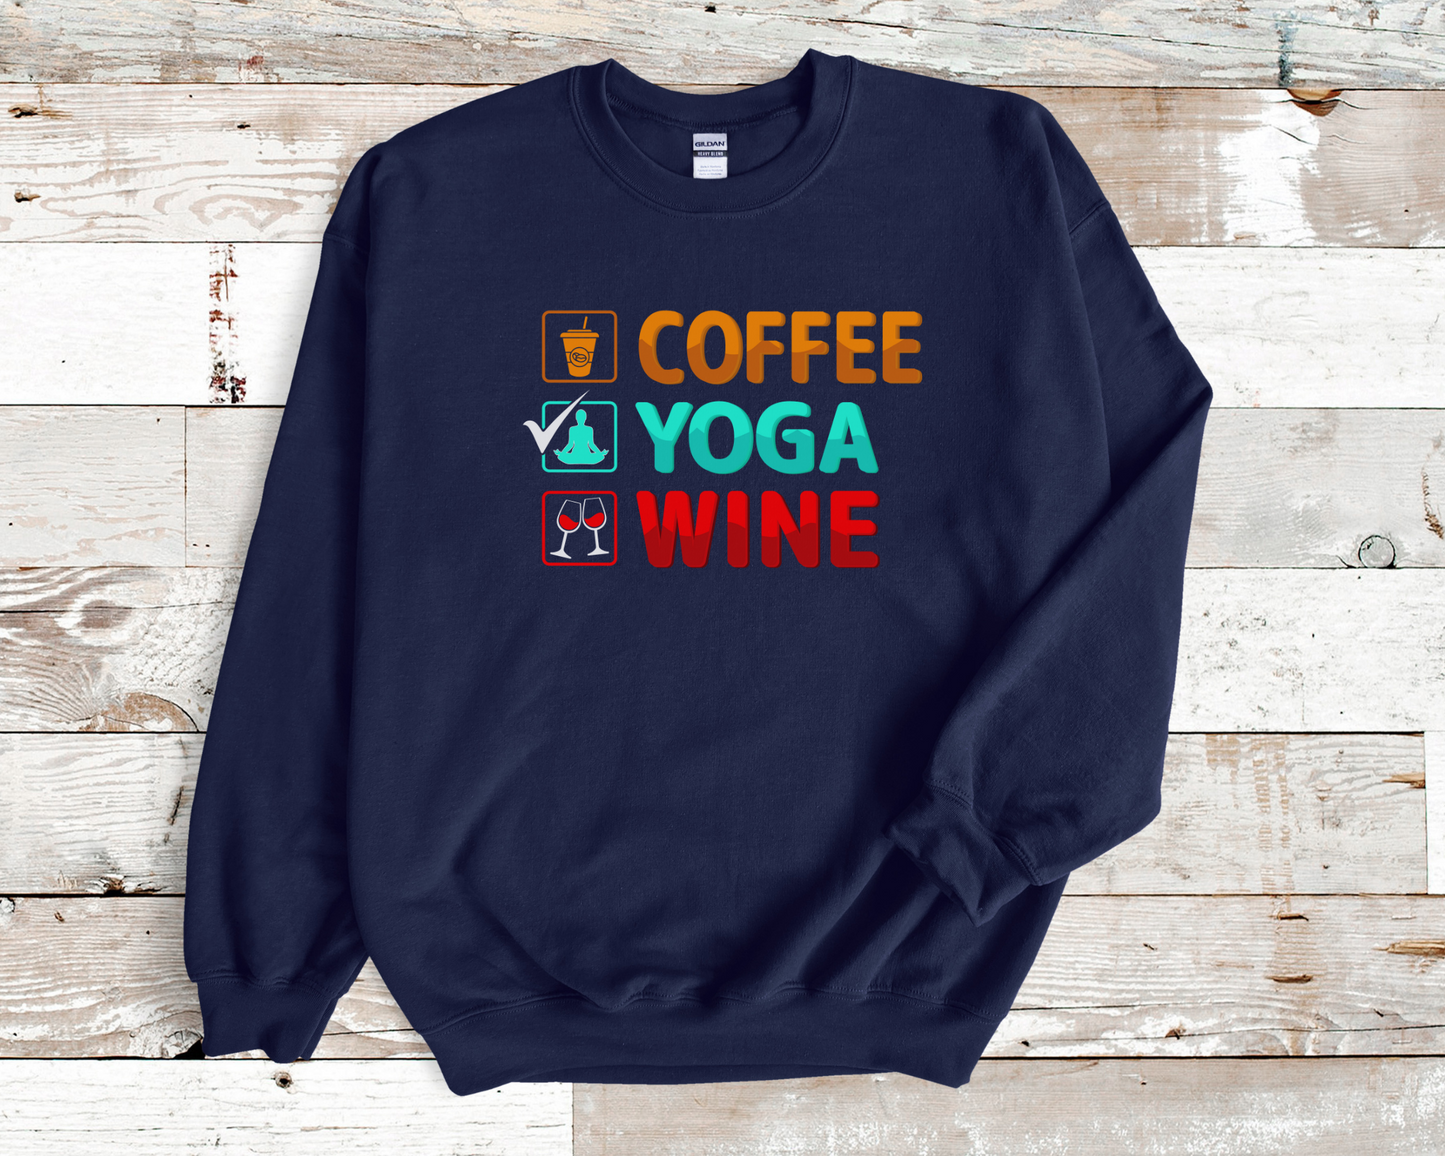 COFFEE YOGA WINE Sweater